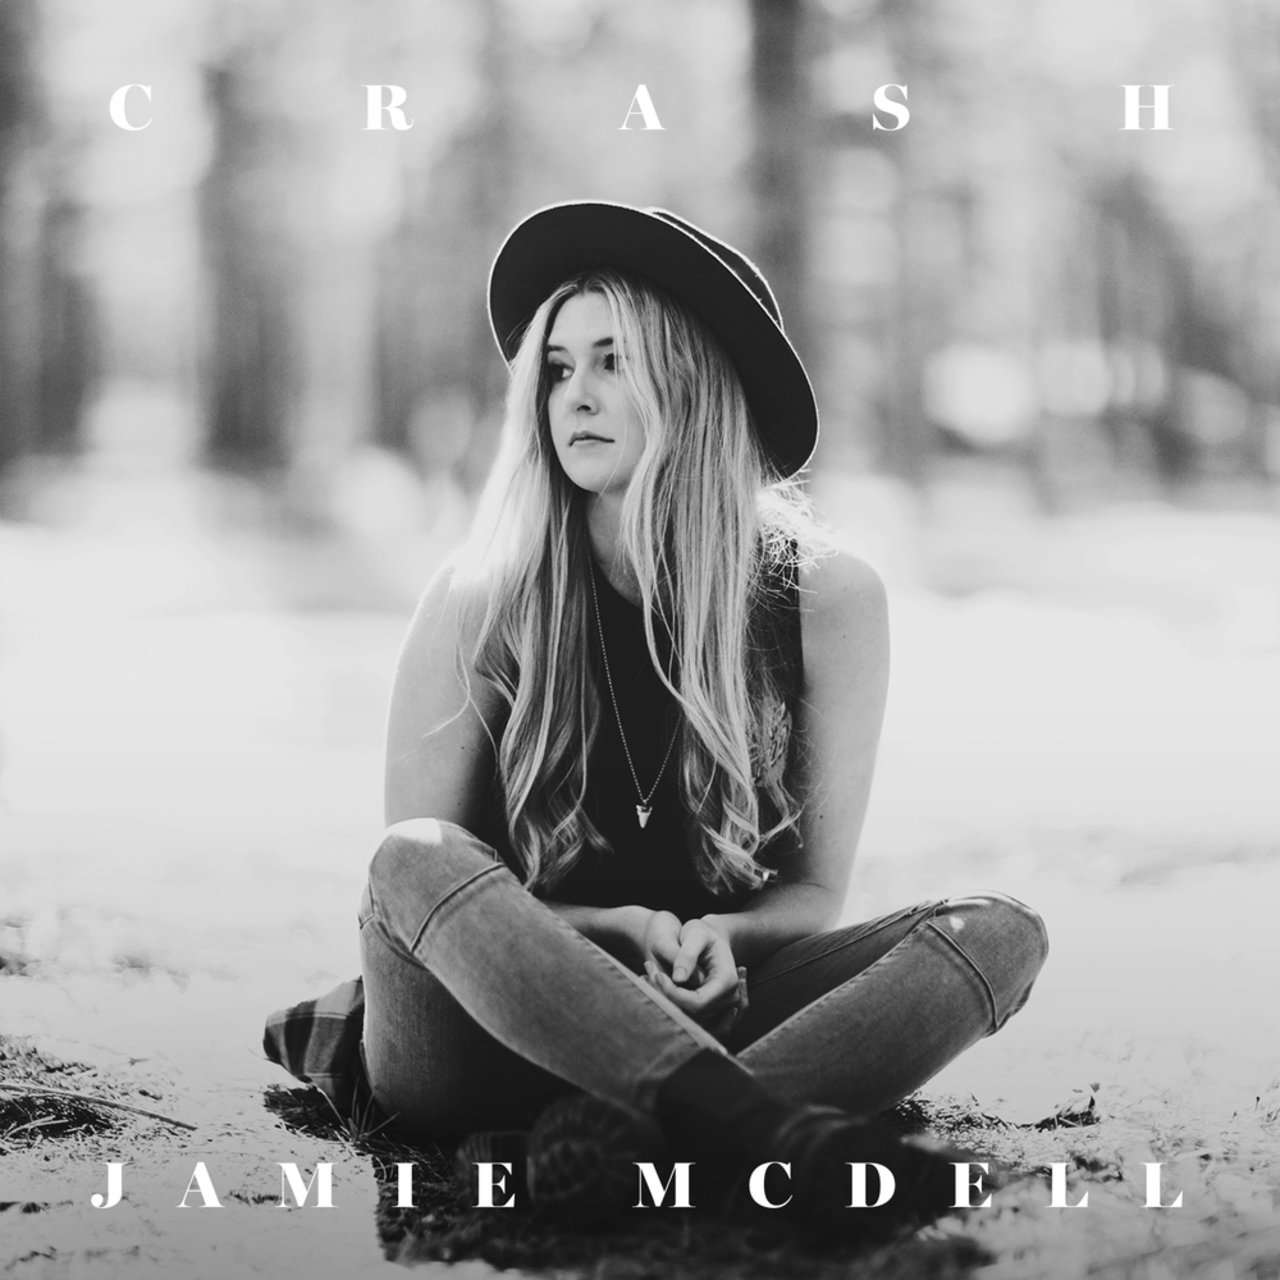 Jamie McDell — Crash cover artwork